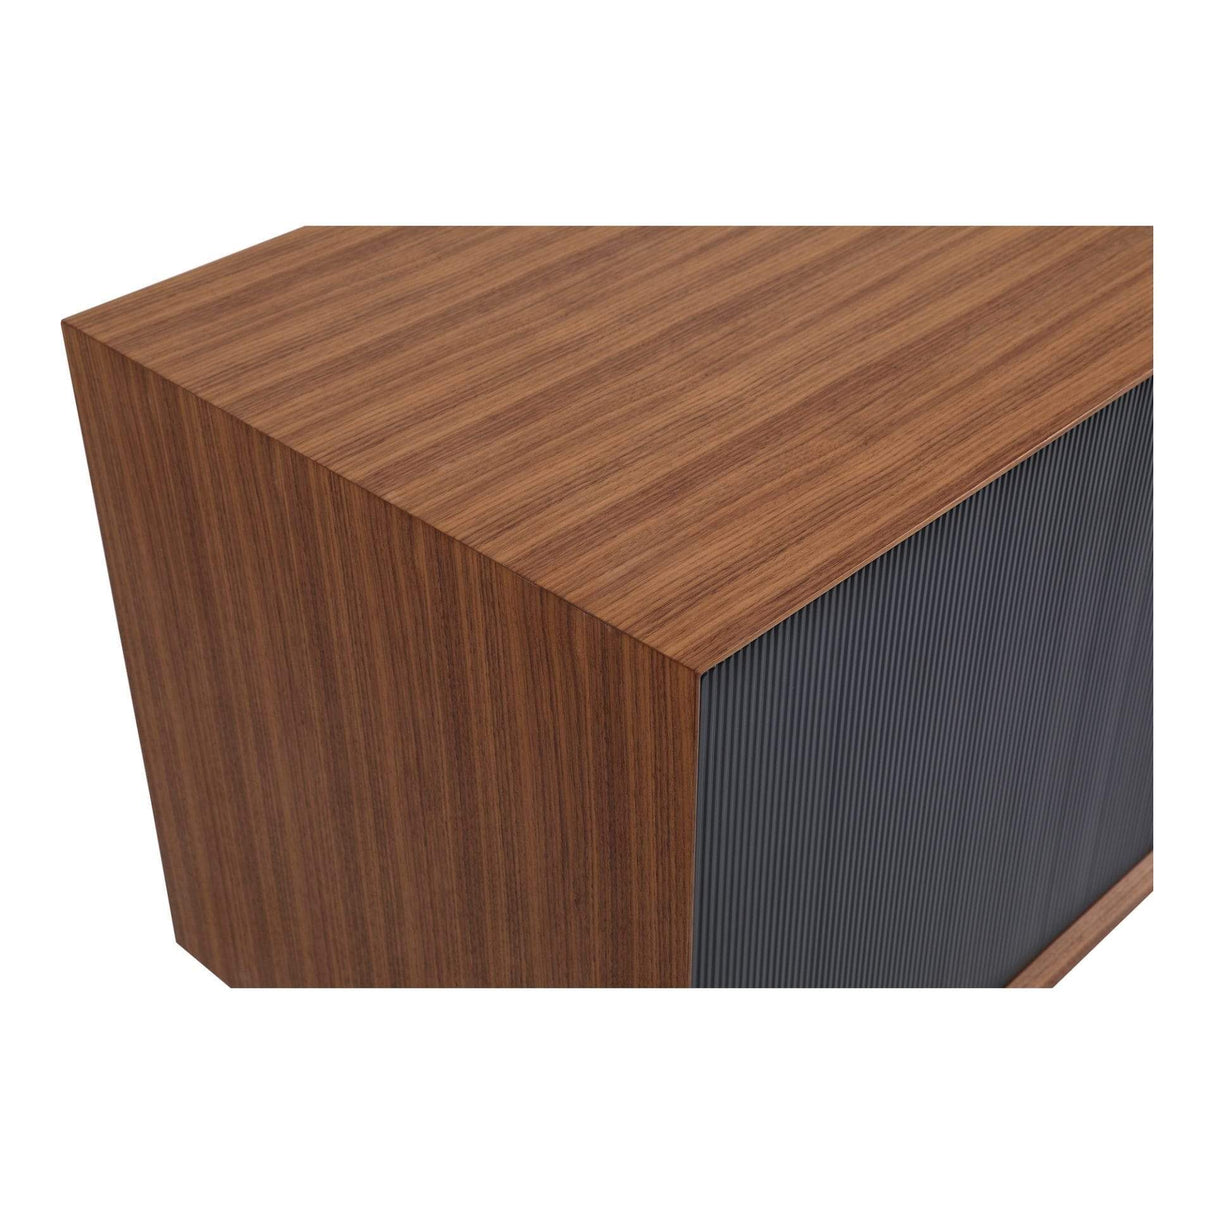 BLU Home Araya Sideboard Furniture moes-PX-1001-03